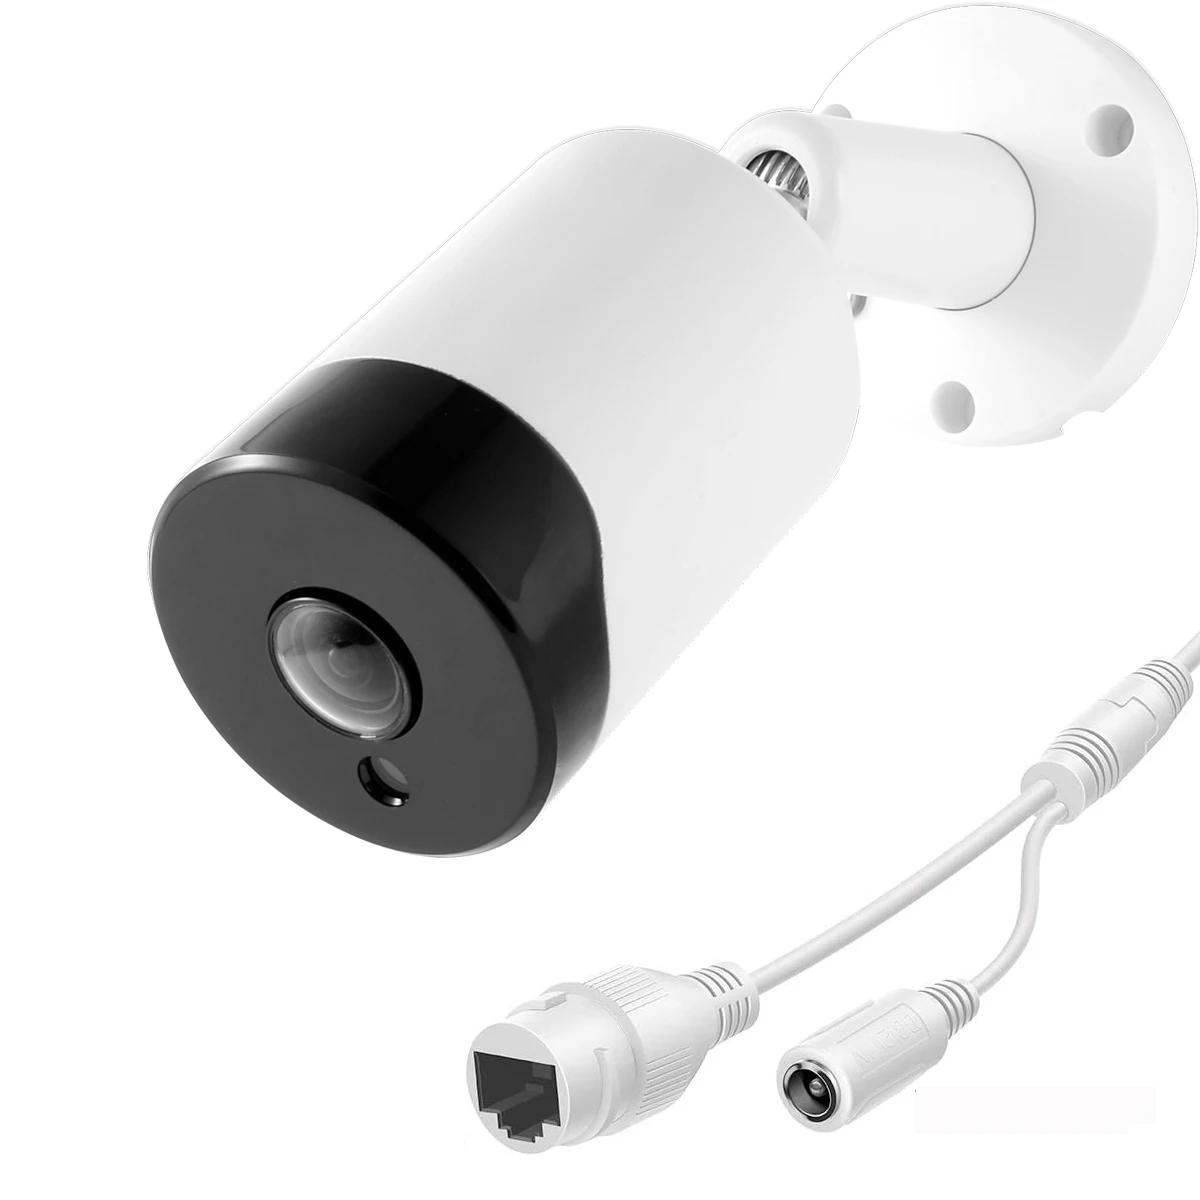 

Сетевая камера видеонаблюдения Uvusee, 1,7 МП, H.265, POE, мм, широкоугольный объектив «рыбий глаз», водонепроницаемая IP-камера наблюдения